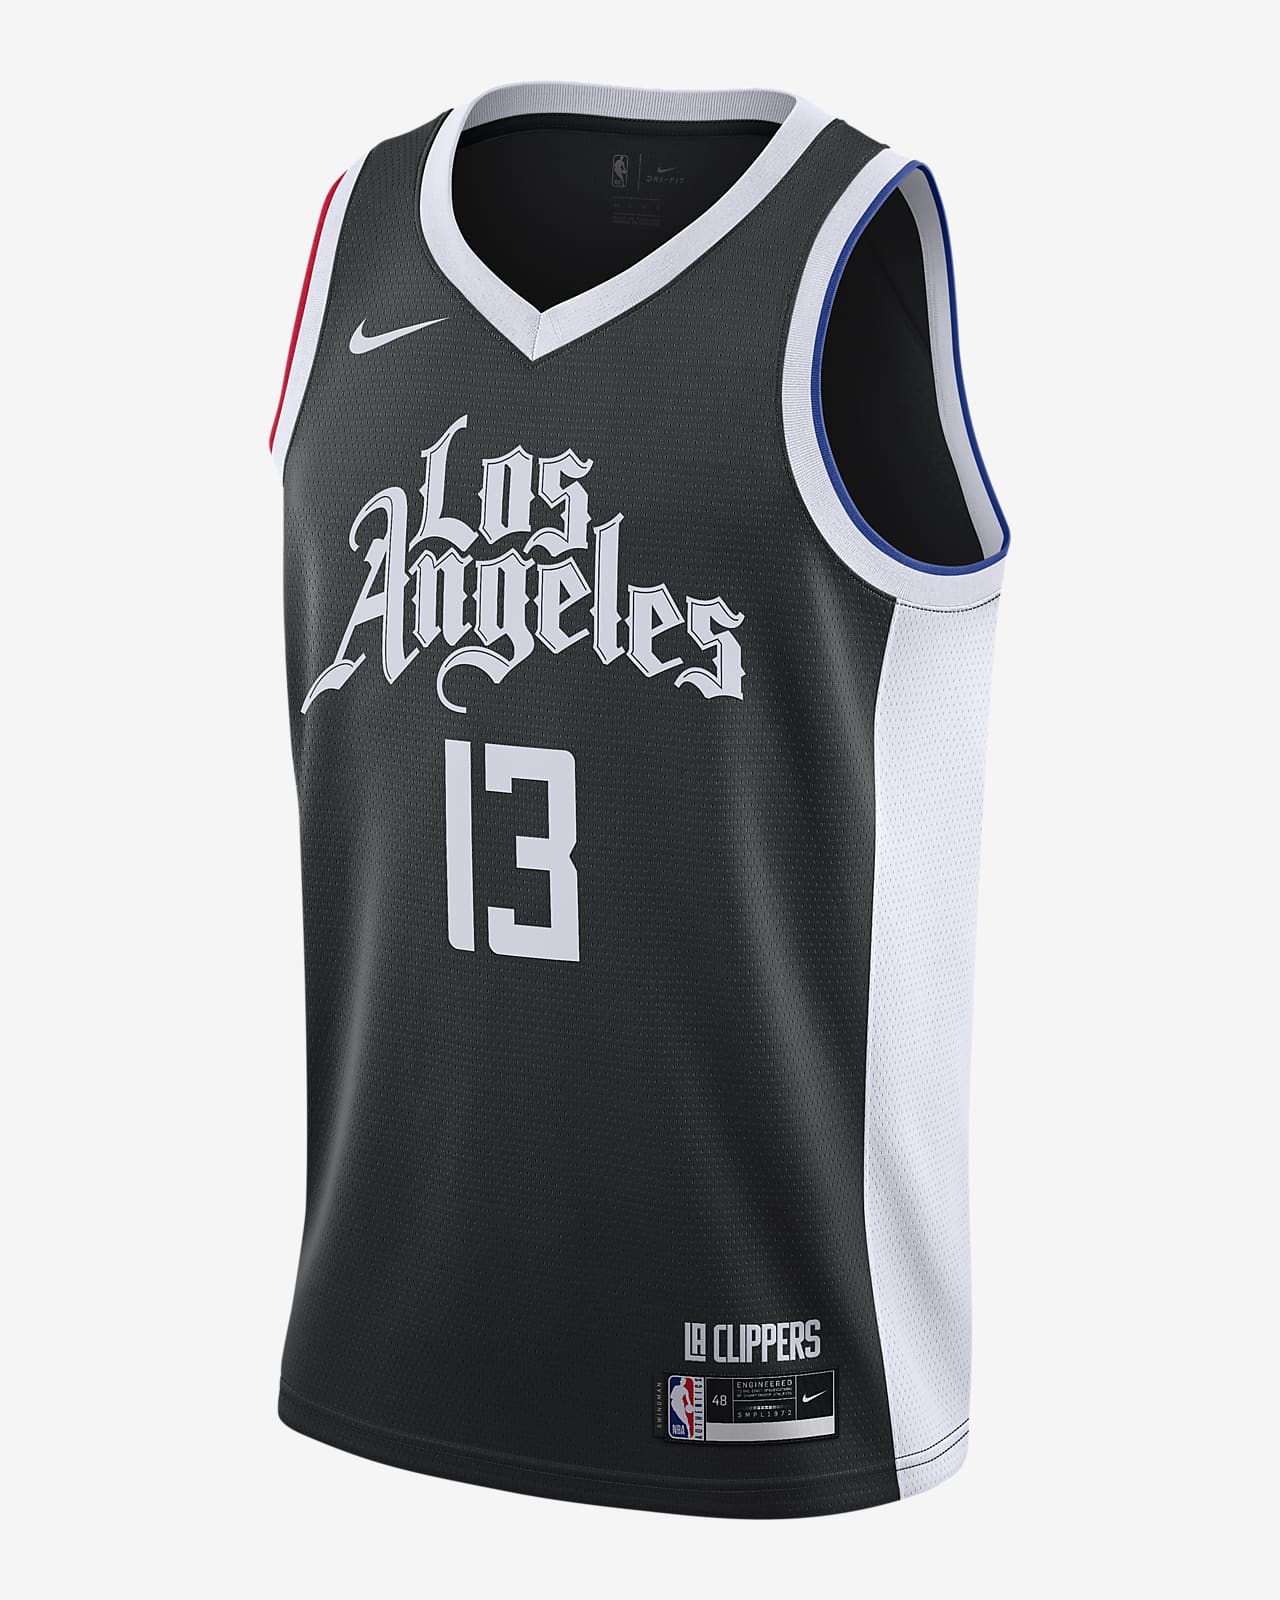 LA Clippers City Edition Nike NBA Swingman Jersey